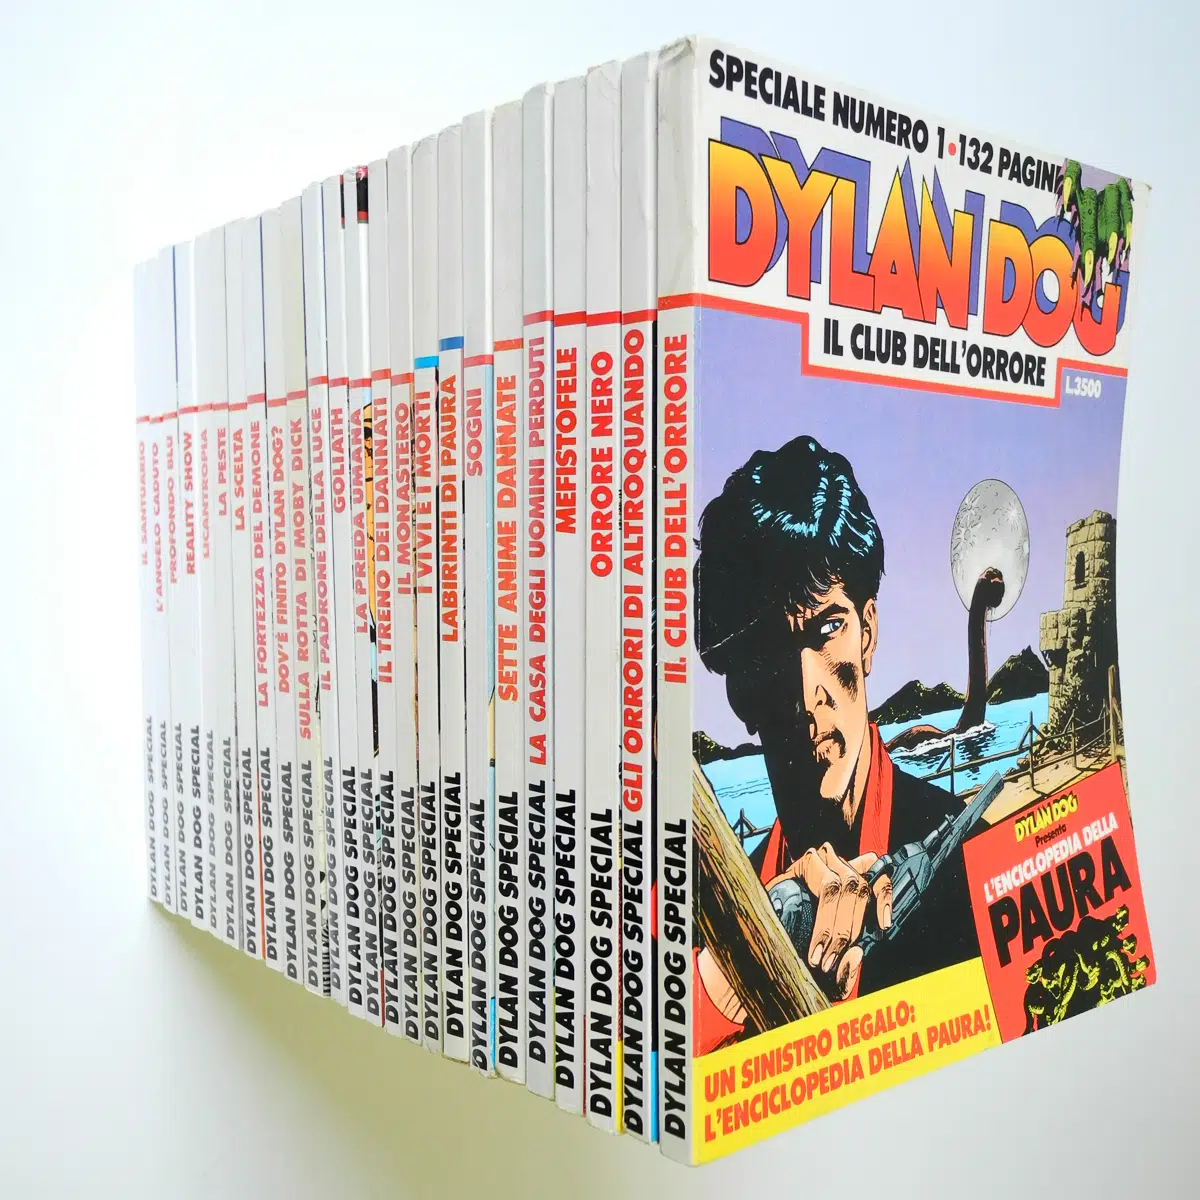 Dylan Dog speciale n. 1/24 con albetti originali Bonelli